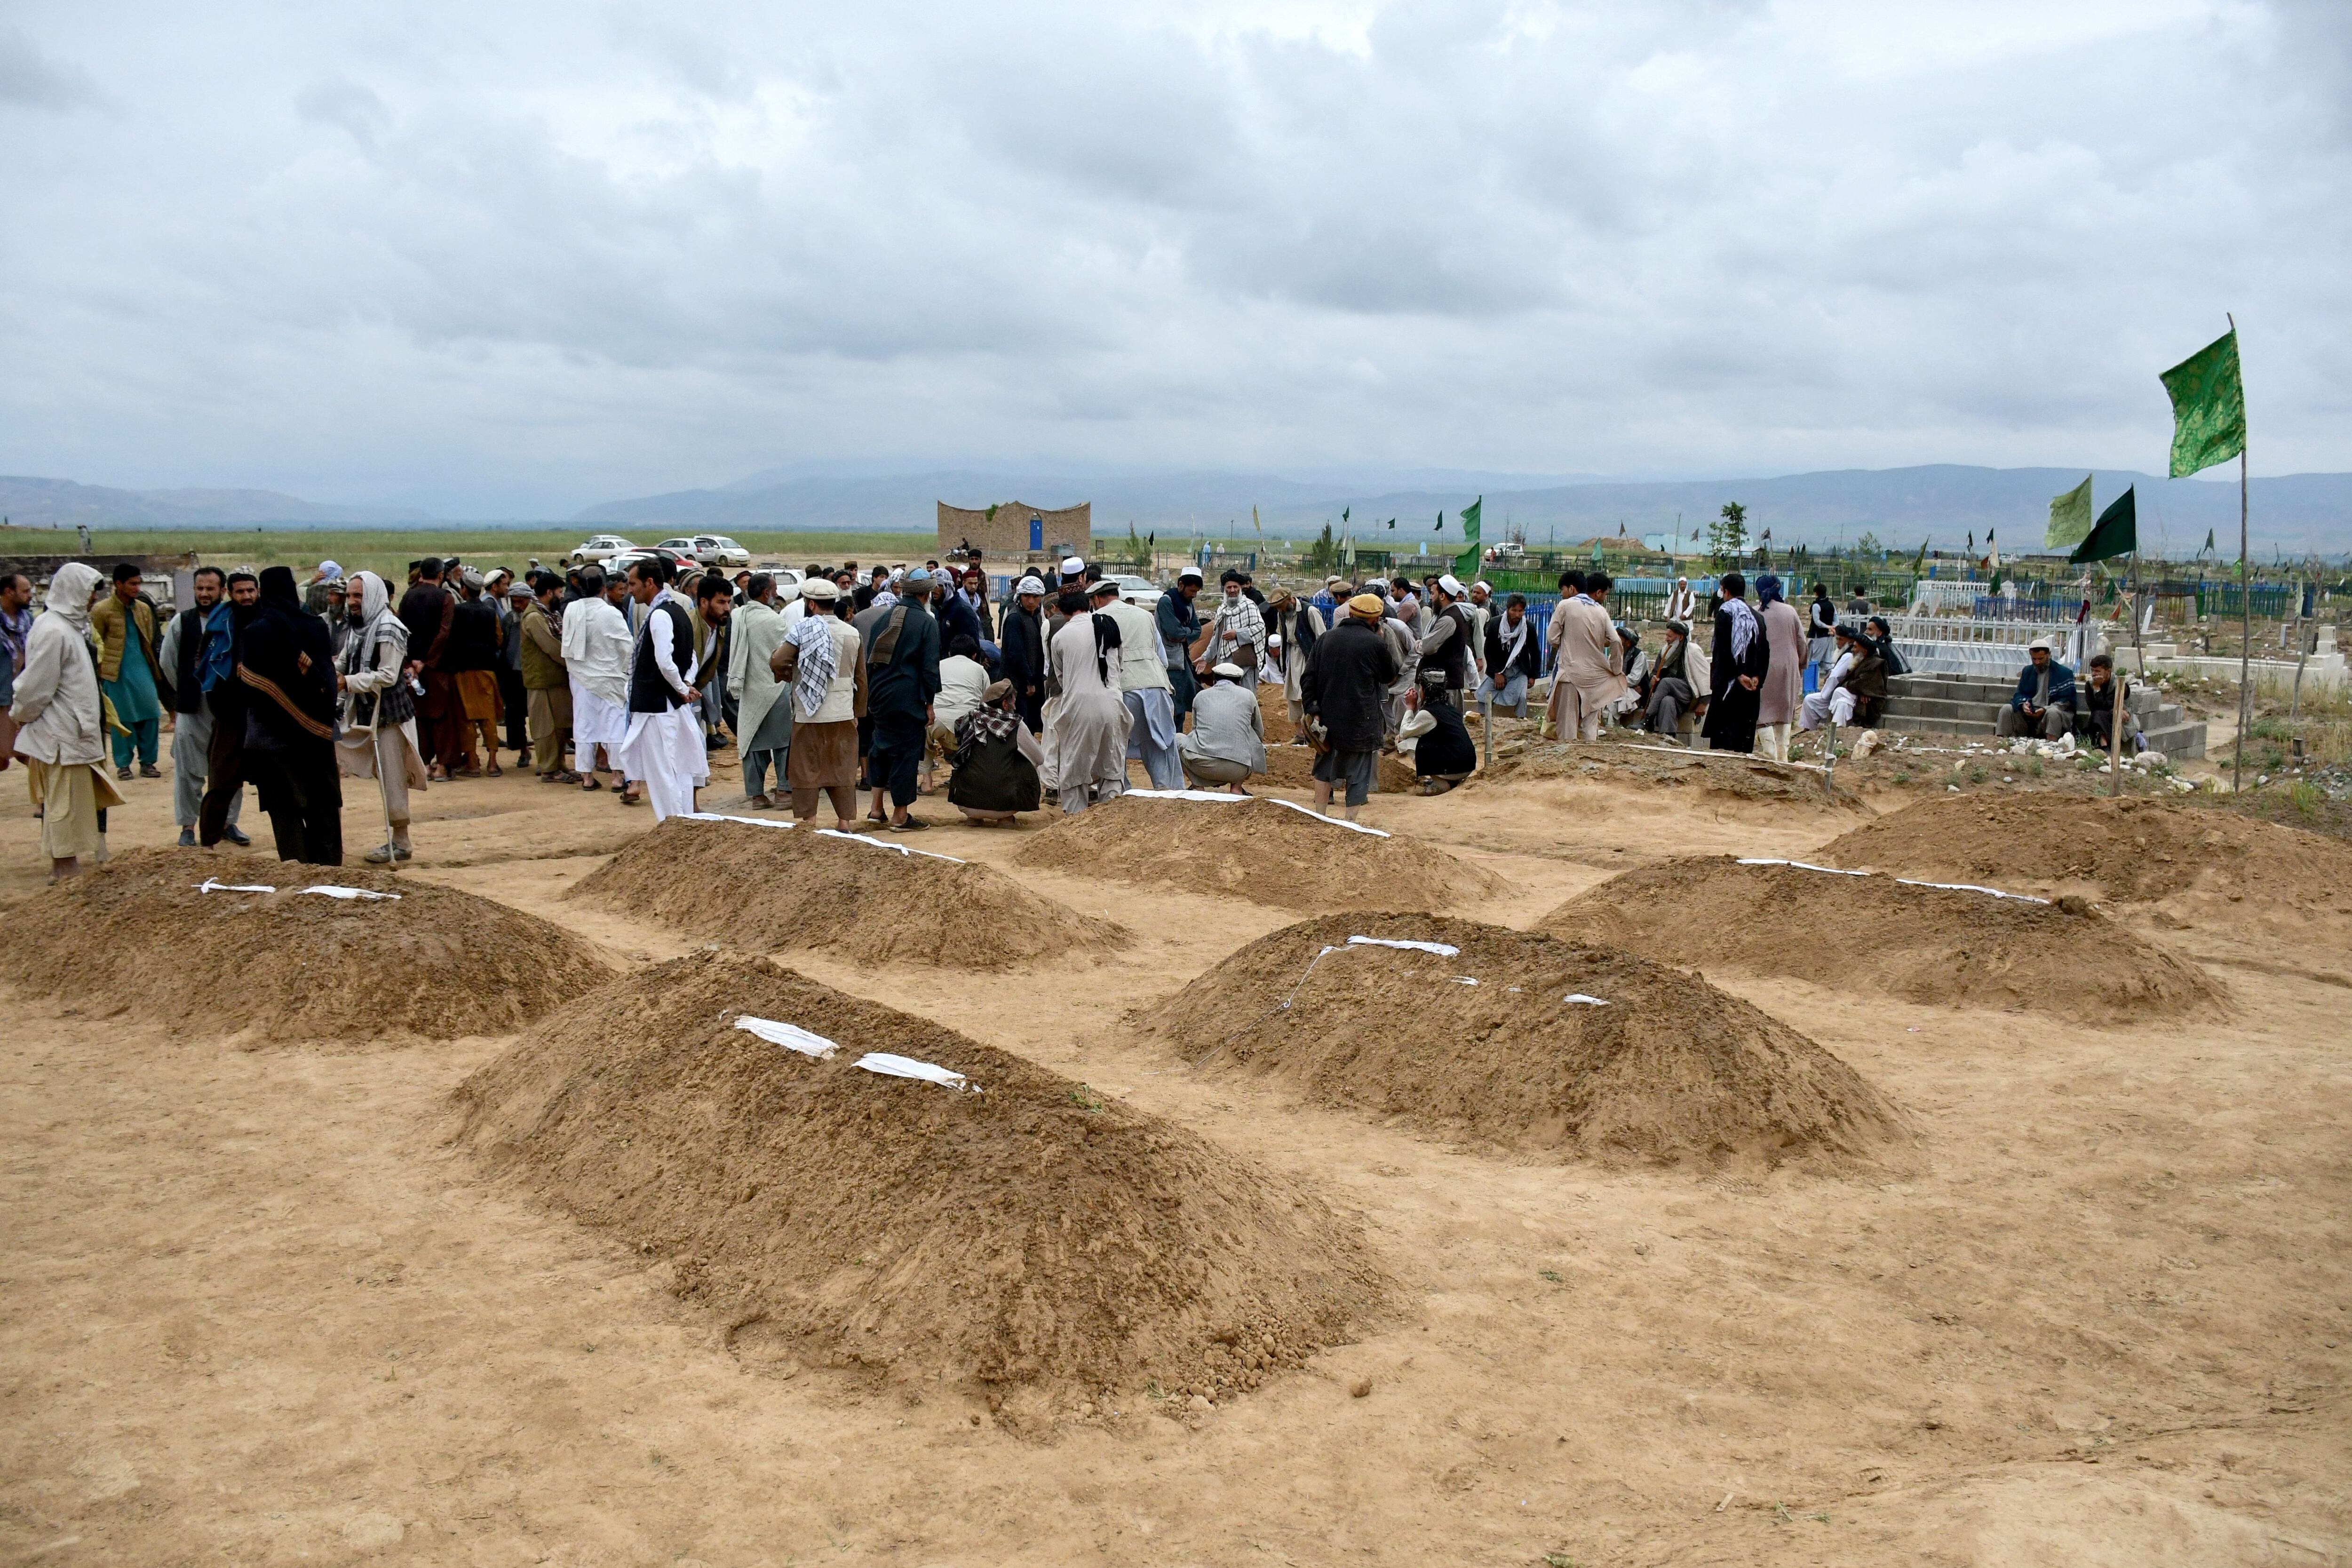 Familiares afganos ofrecen oraciones durante una ceremonia de entierro, cerca de las tumbas de las víctimas que perdieron la vida tras las inundaciones repentinas tras las fuertes lluvias. Foto: AFP